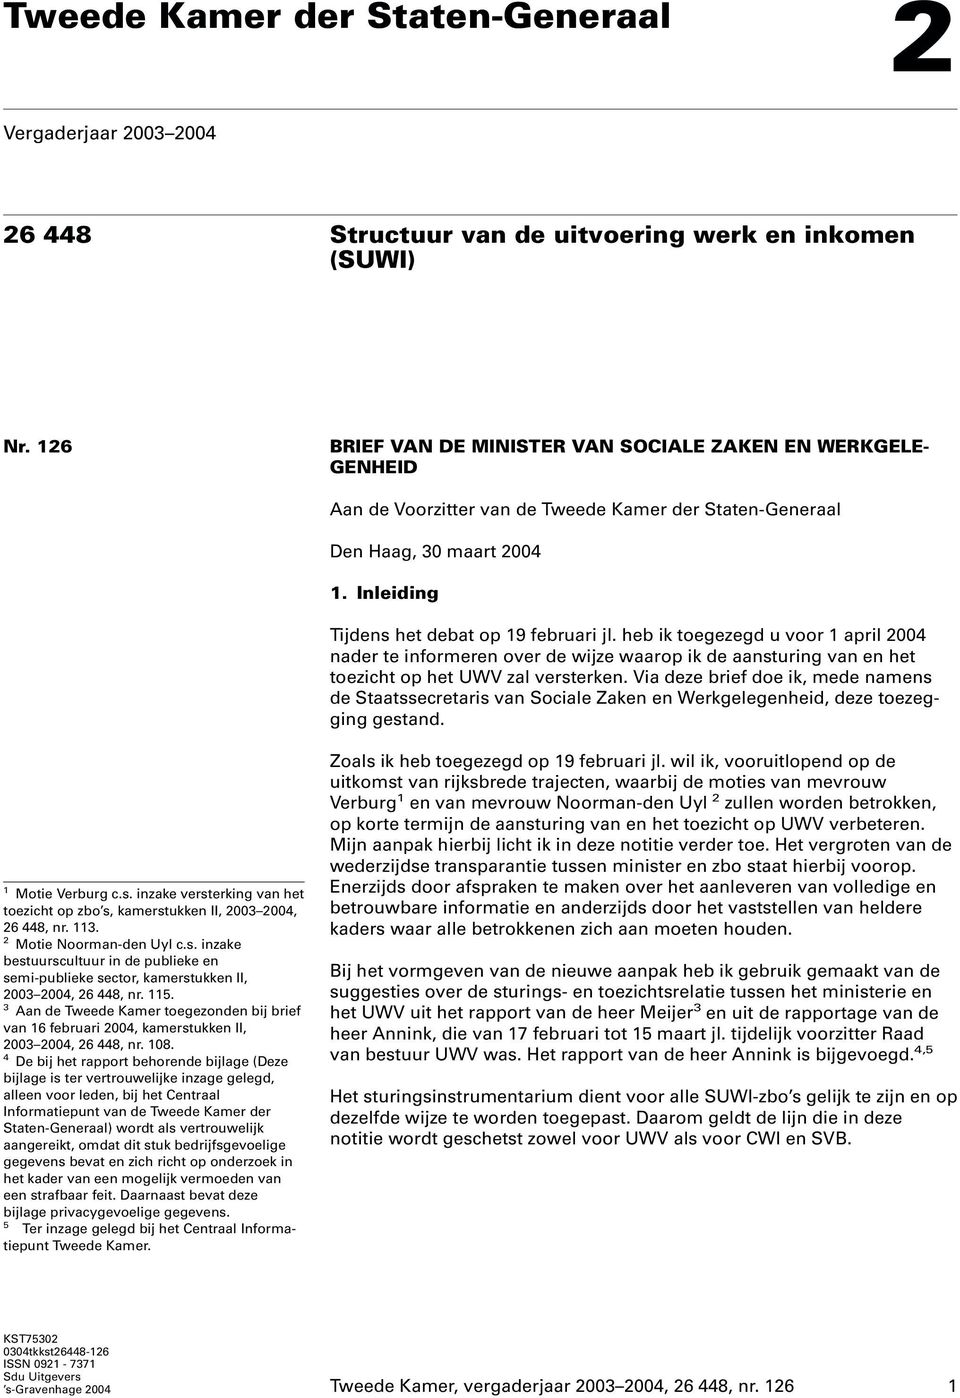 heb ik toegezegd u voor 1 april 2004 nader te informeren over de wijze waarop ik de aansturing van en het toezicht op het UWV zal versterken.